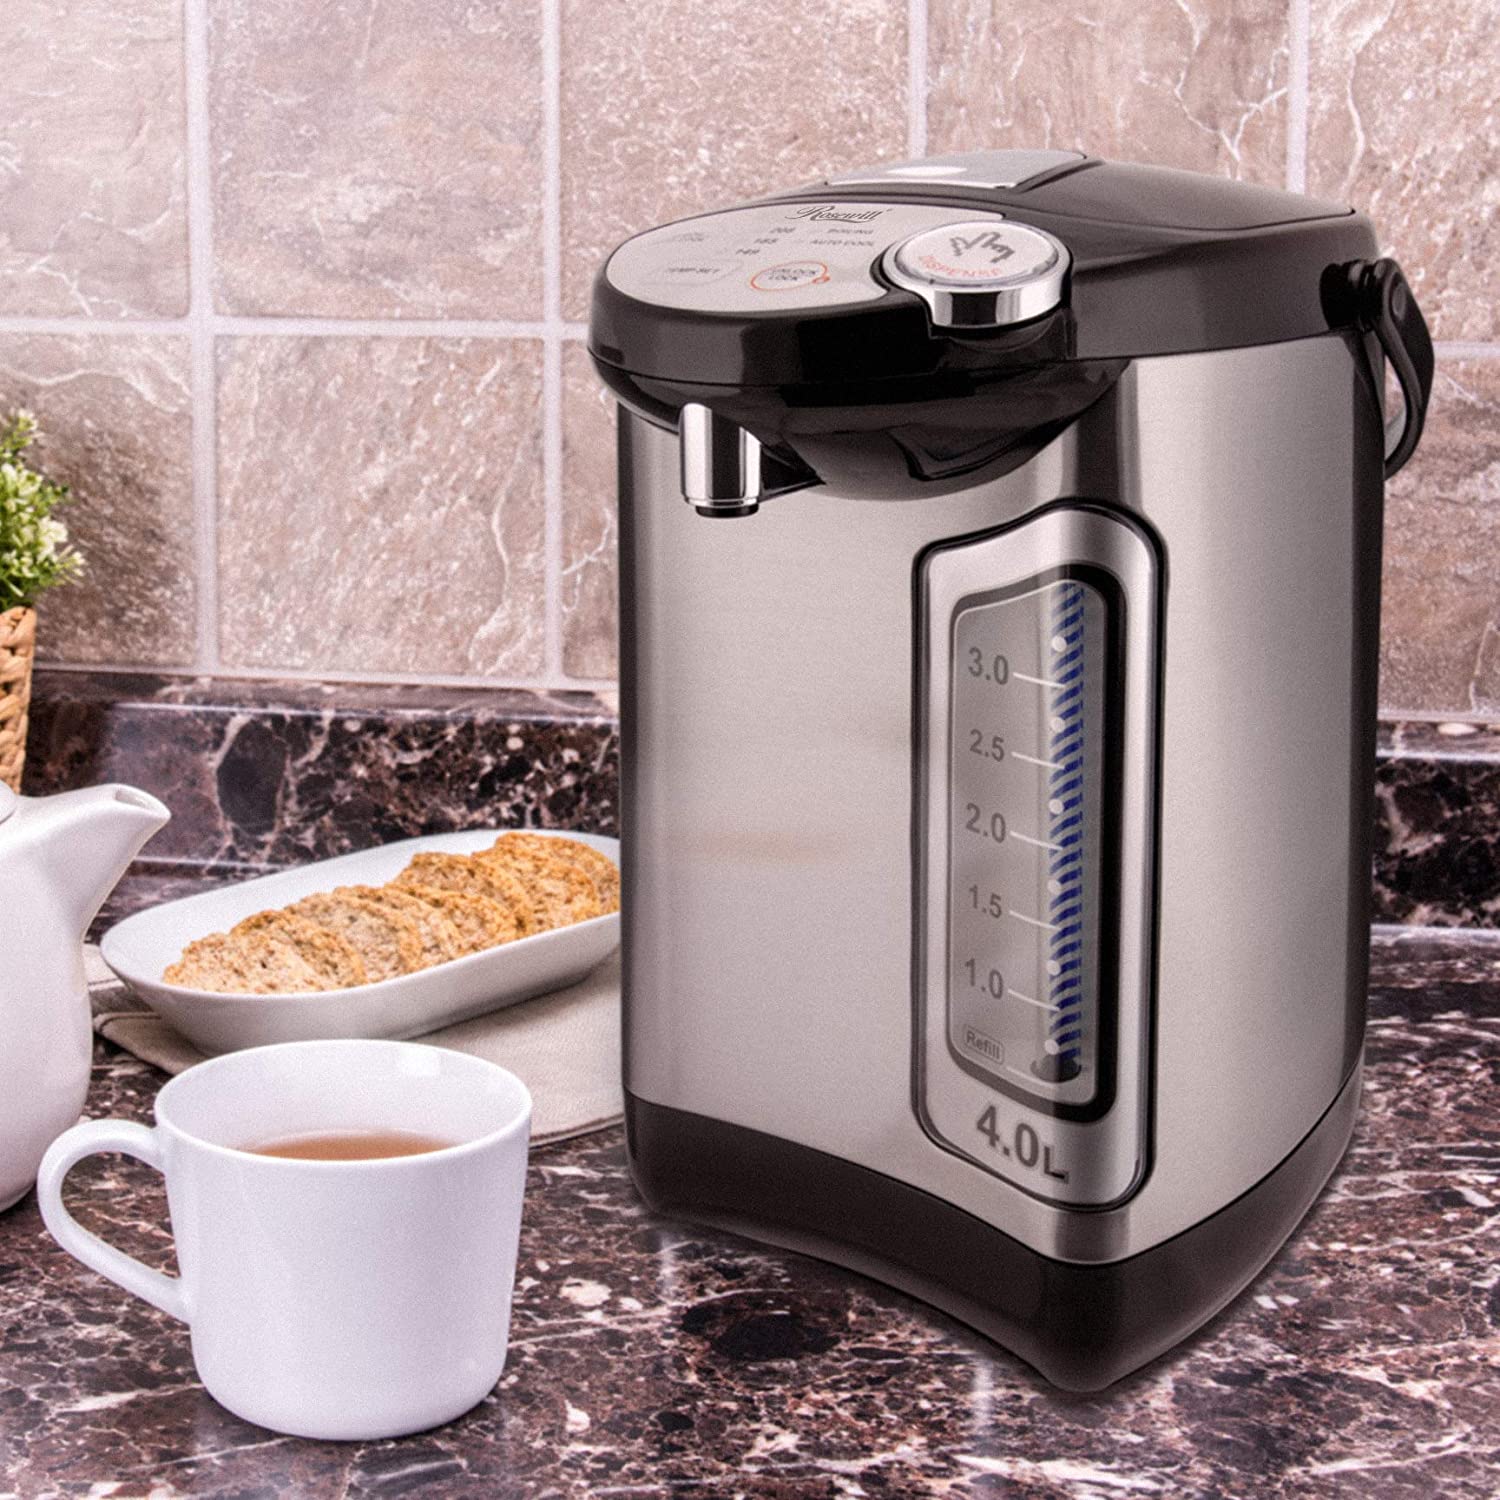 https://sousvideguy.com/wp-content/uploads/2020/11/Best-Hot-Water-Dispenser.jpg